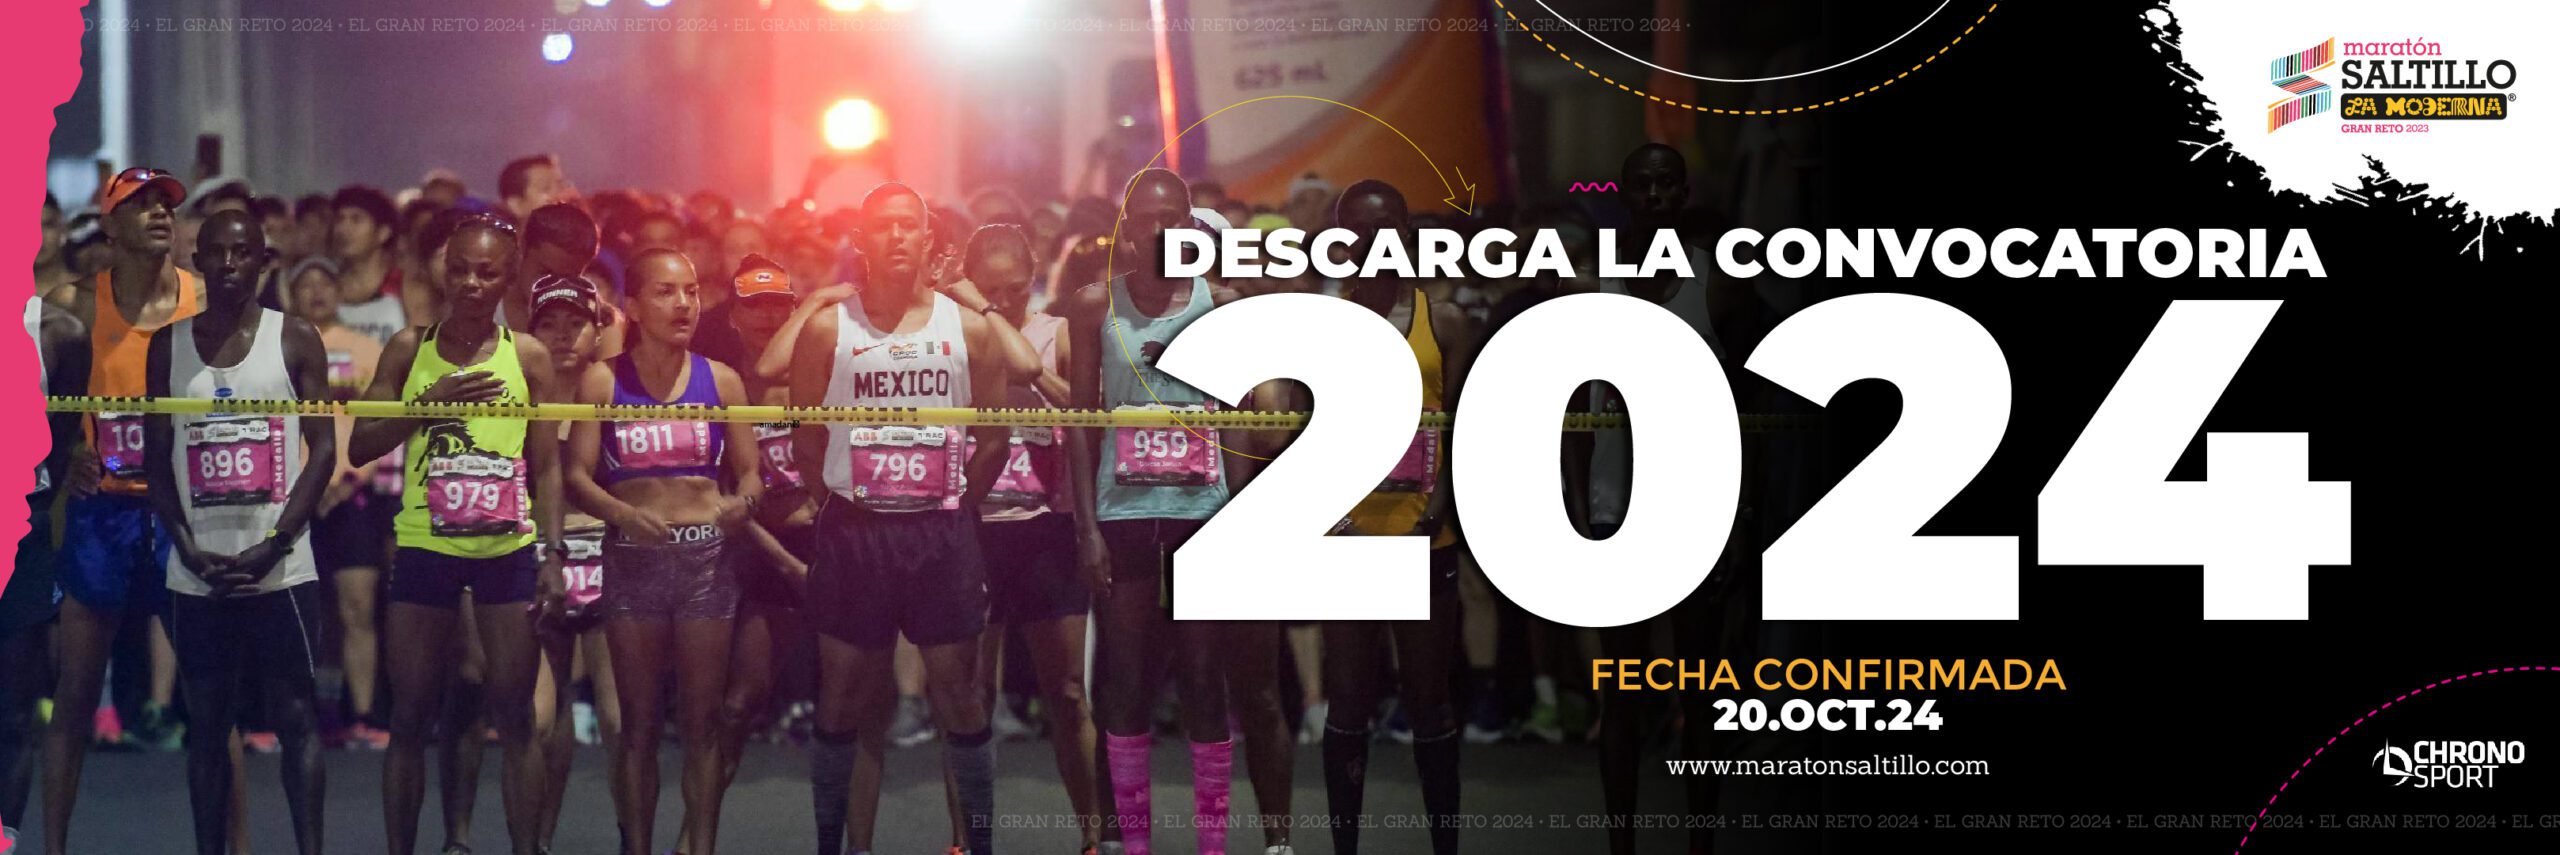 Convocatoria Maratón Saltillo 2024